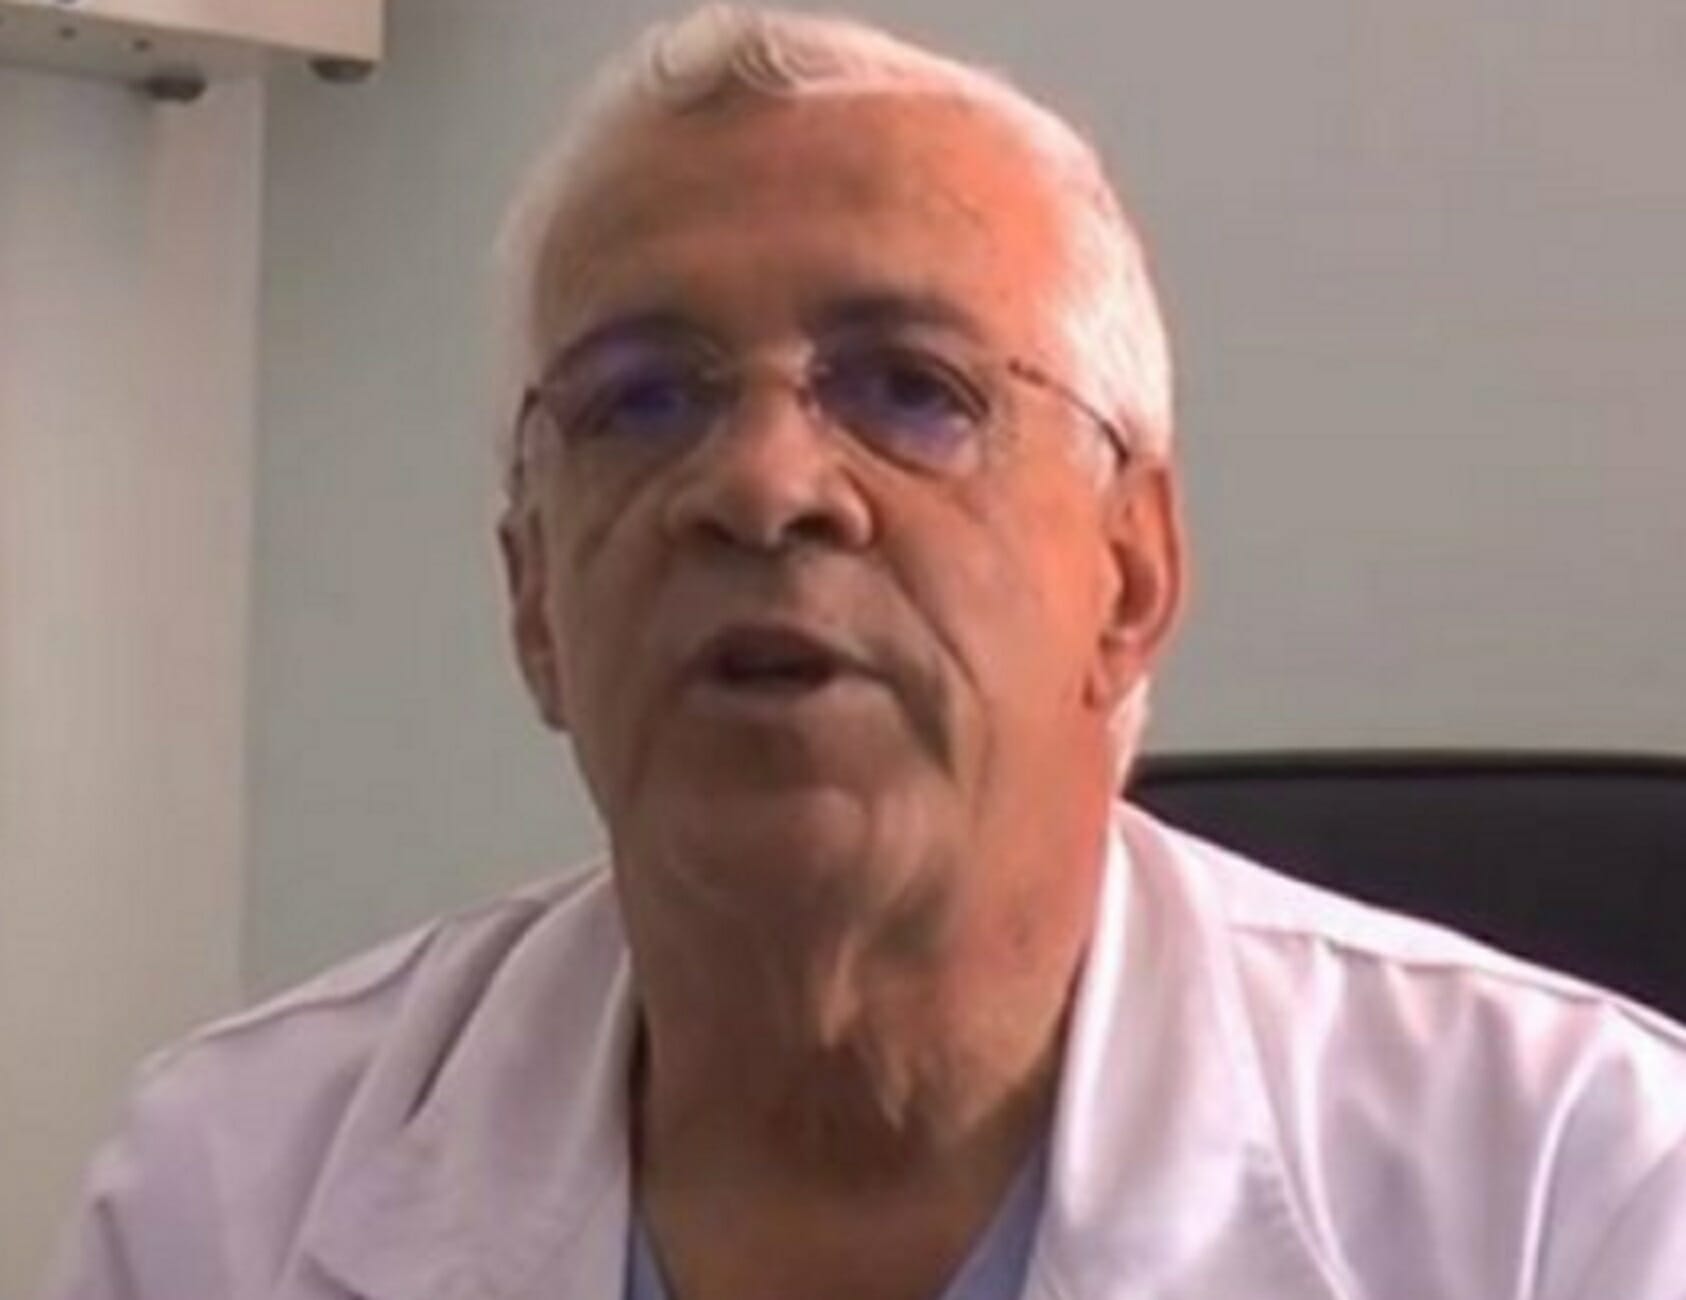 Κορονοϊός: Διευθυντής πνευμονολόγος για τη Θεία Κοινωνία! “Λυπάμαι για αυτά που ακούστηκαν” (Βίντεο)